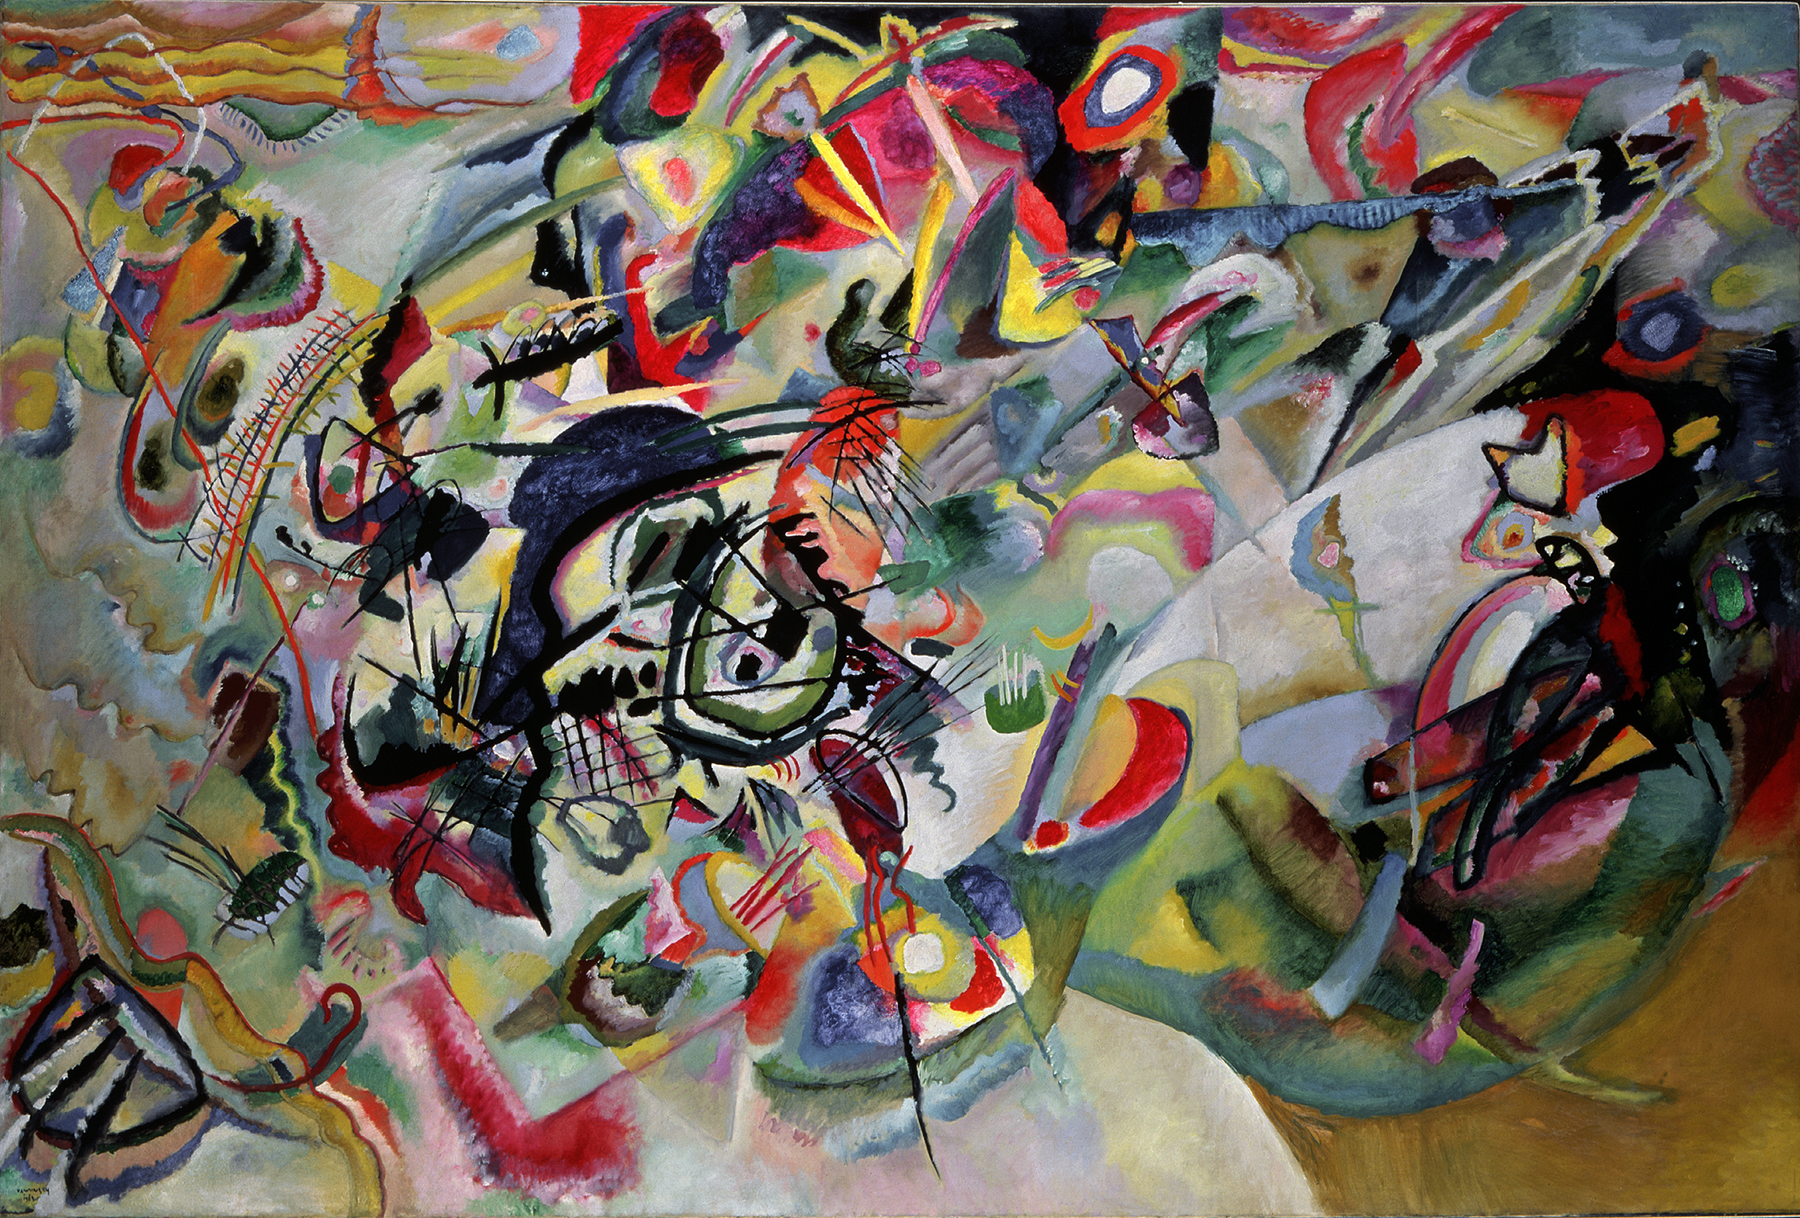 Wasiliy Kandinsky, "Komposition VII" von 1913. 